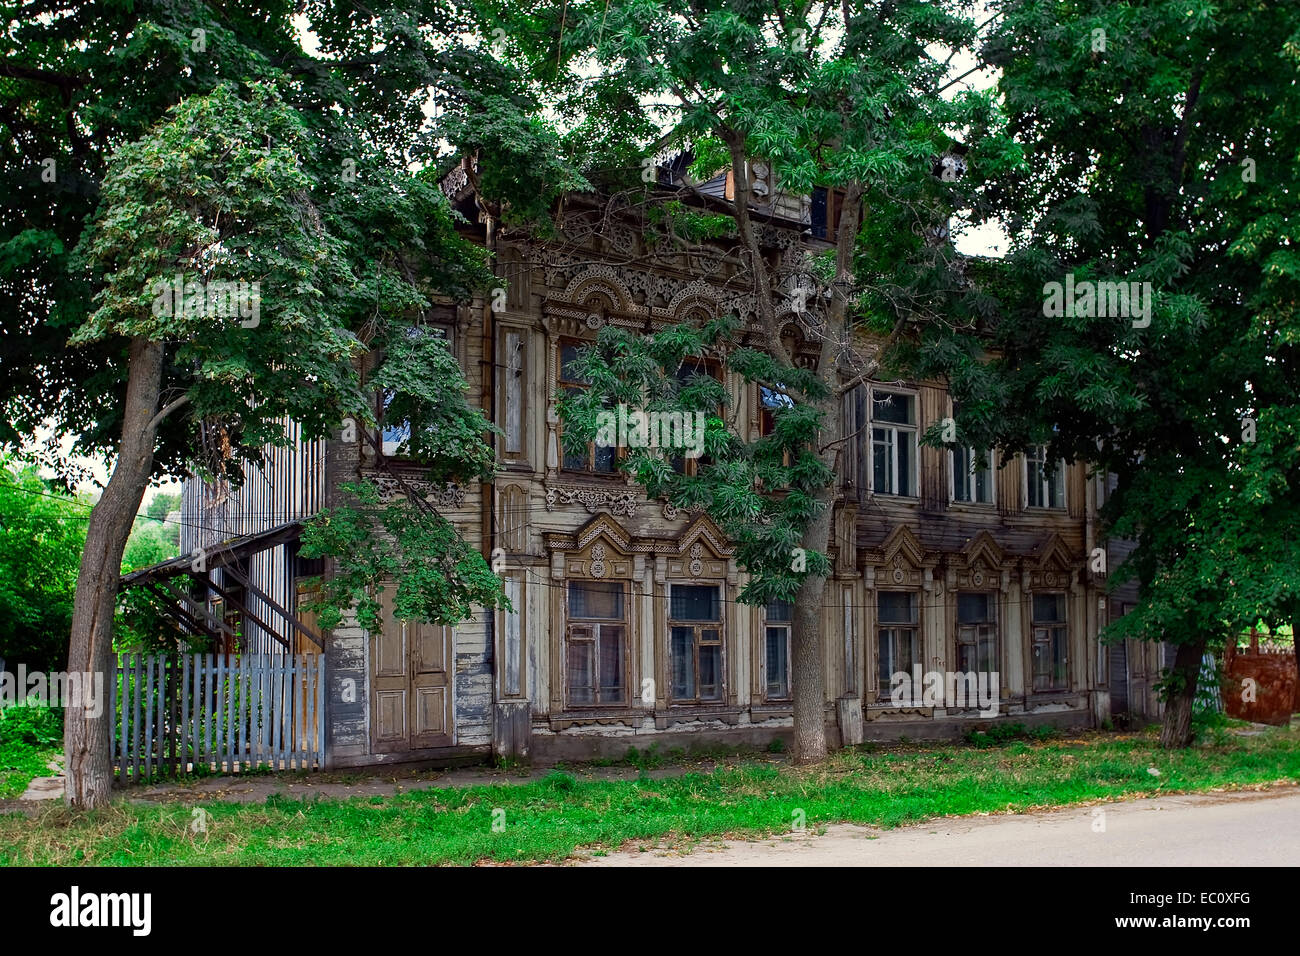 La casa es de madera tallada, viejo. Kozmodemyansk. Foto de stock